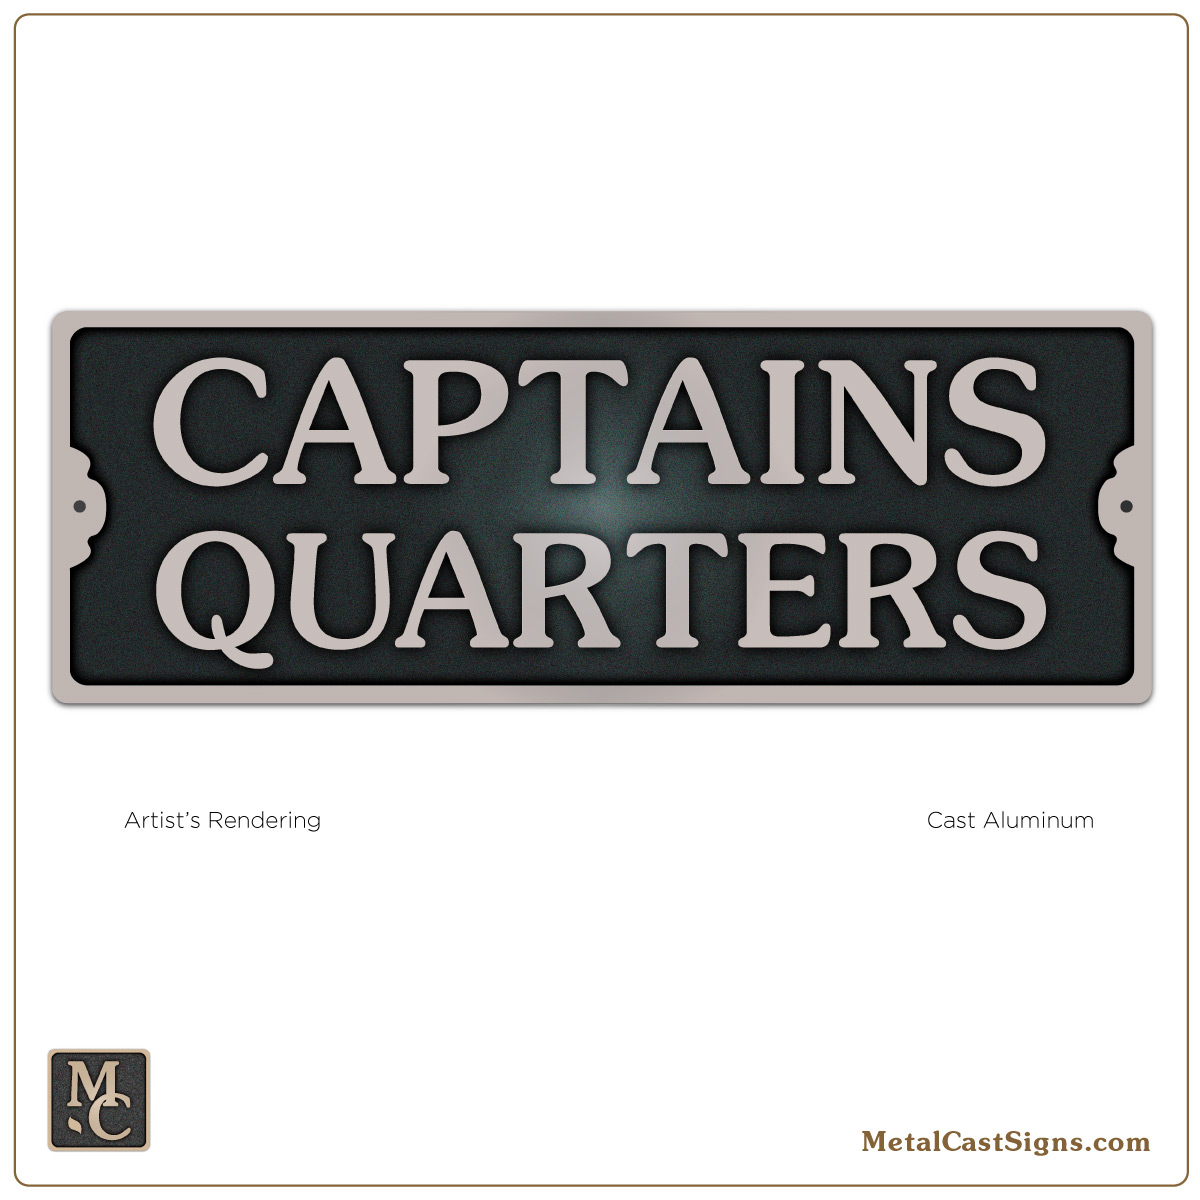 https://metalcastsigns.com/wp-content/uploads/captains-quarters-7in-door-sign-aluminum.jpg